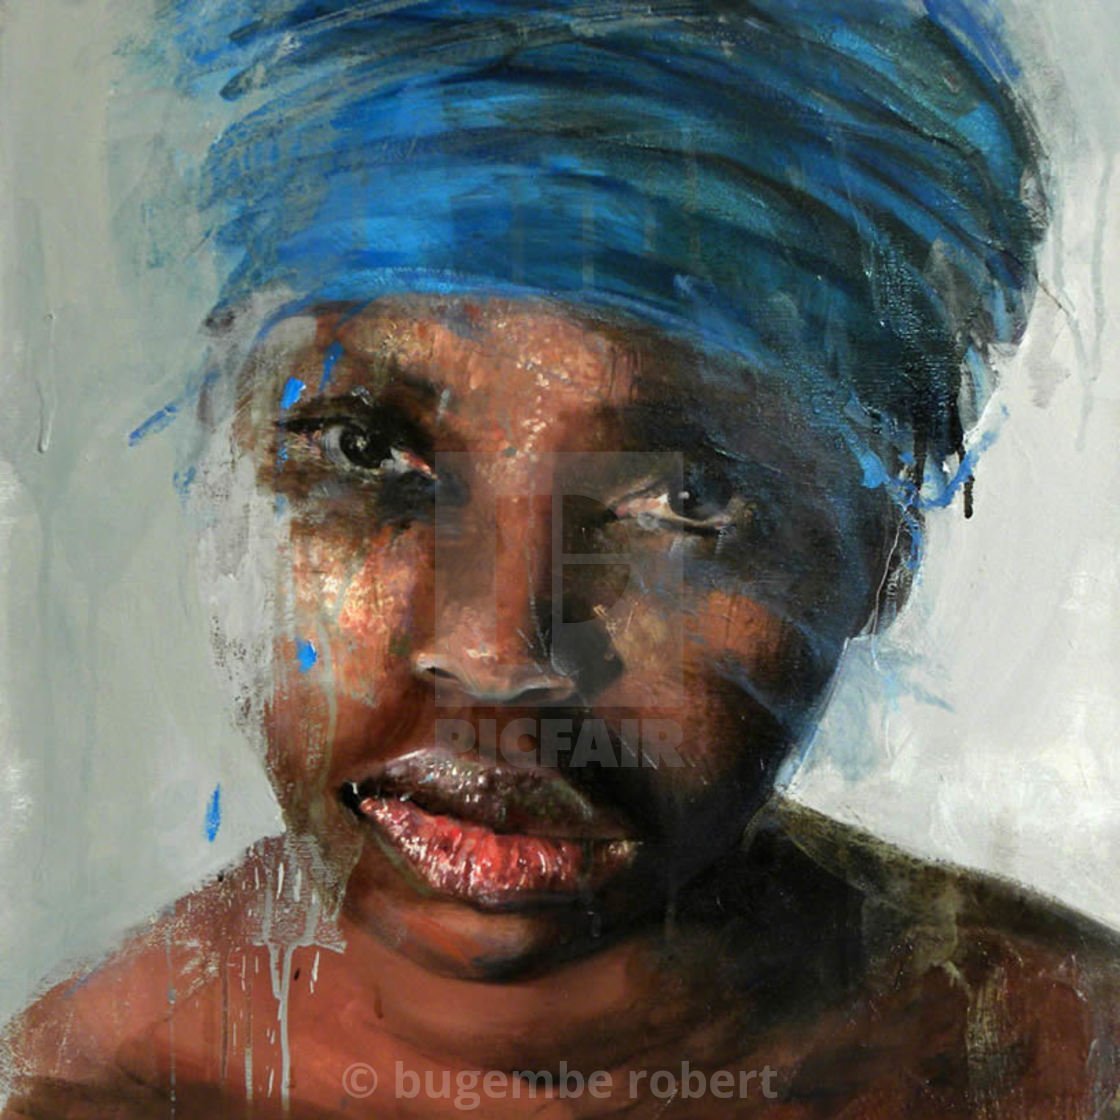 Грязная негритянка. Негритянка живопись. Чернокожая женщина живопись. Африканская живопись. Портрет негритянки.